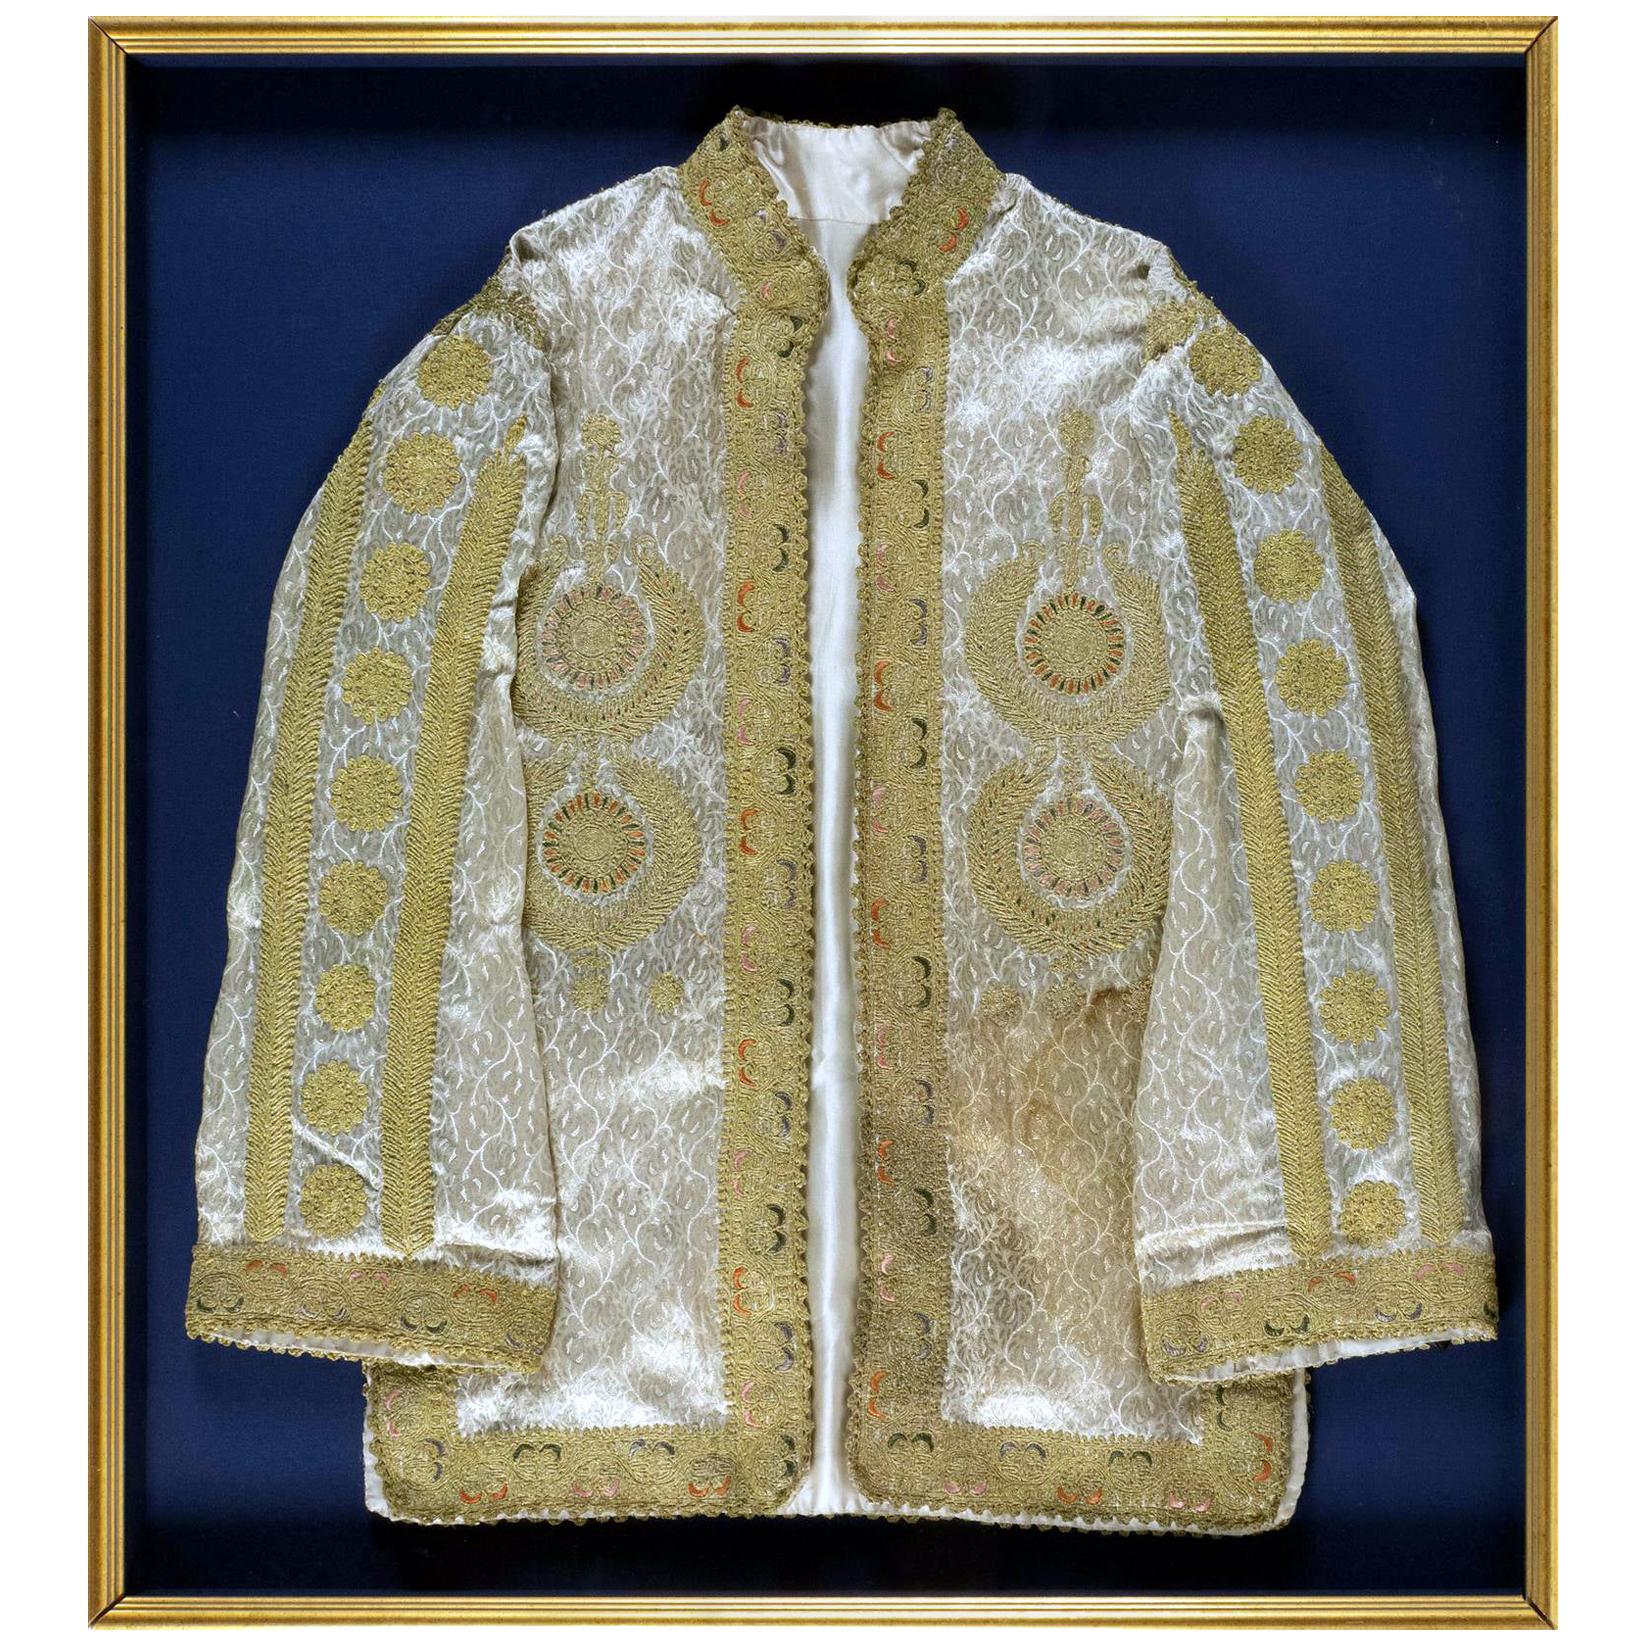 Gerahmter Ottomane-Mantel mit Metallfaden-Stickerei